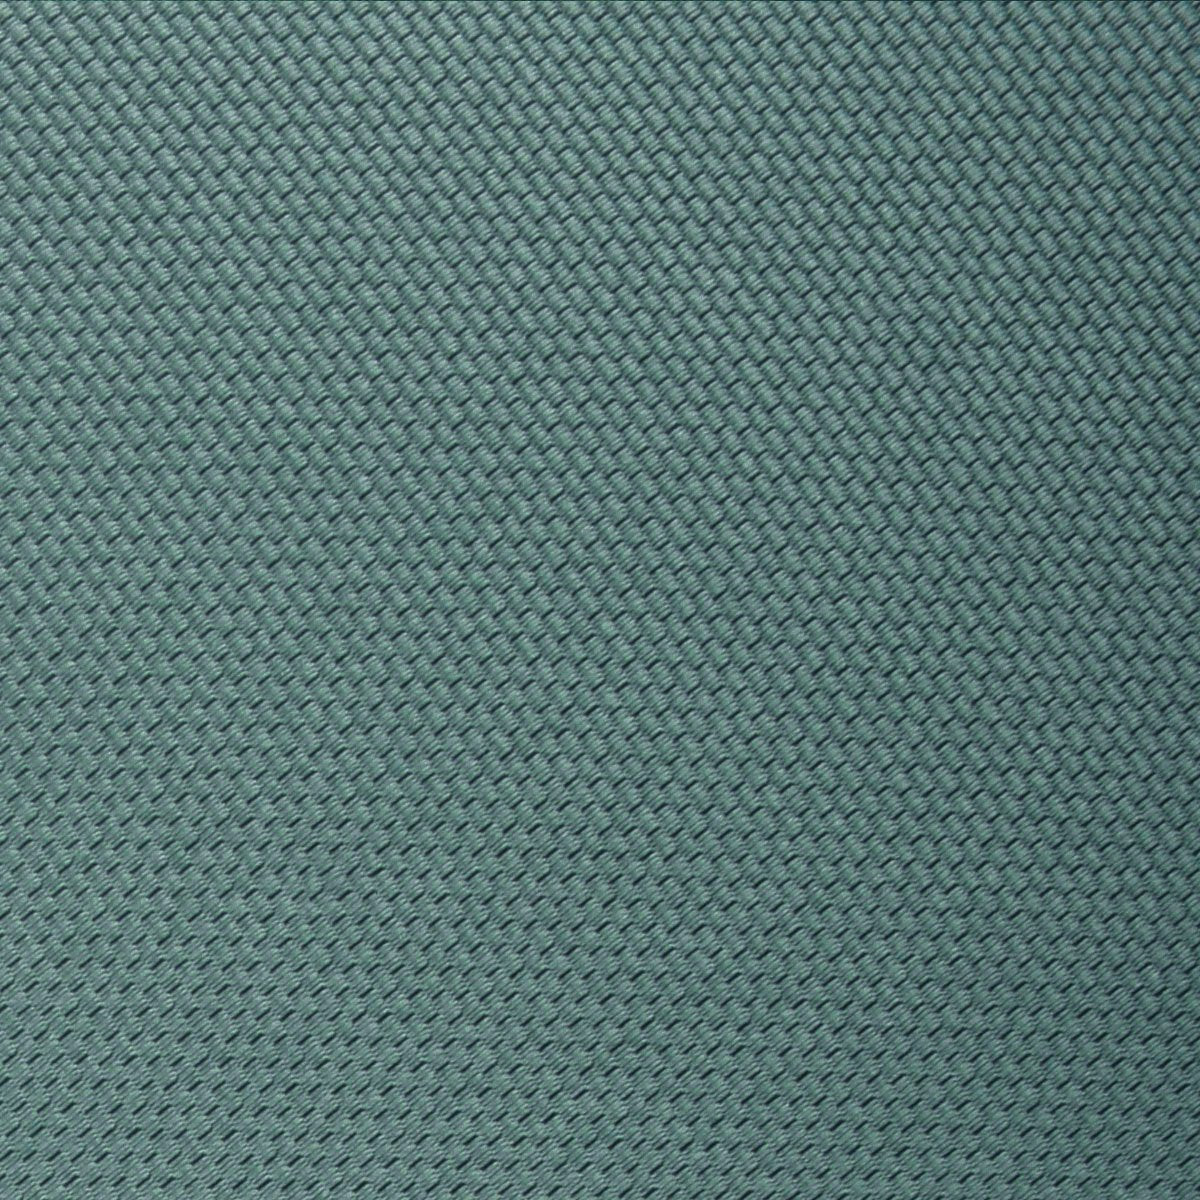 Dusty Teal Blue Weave Necktie Fabric